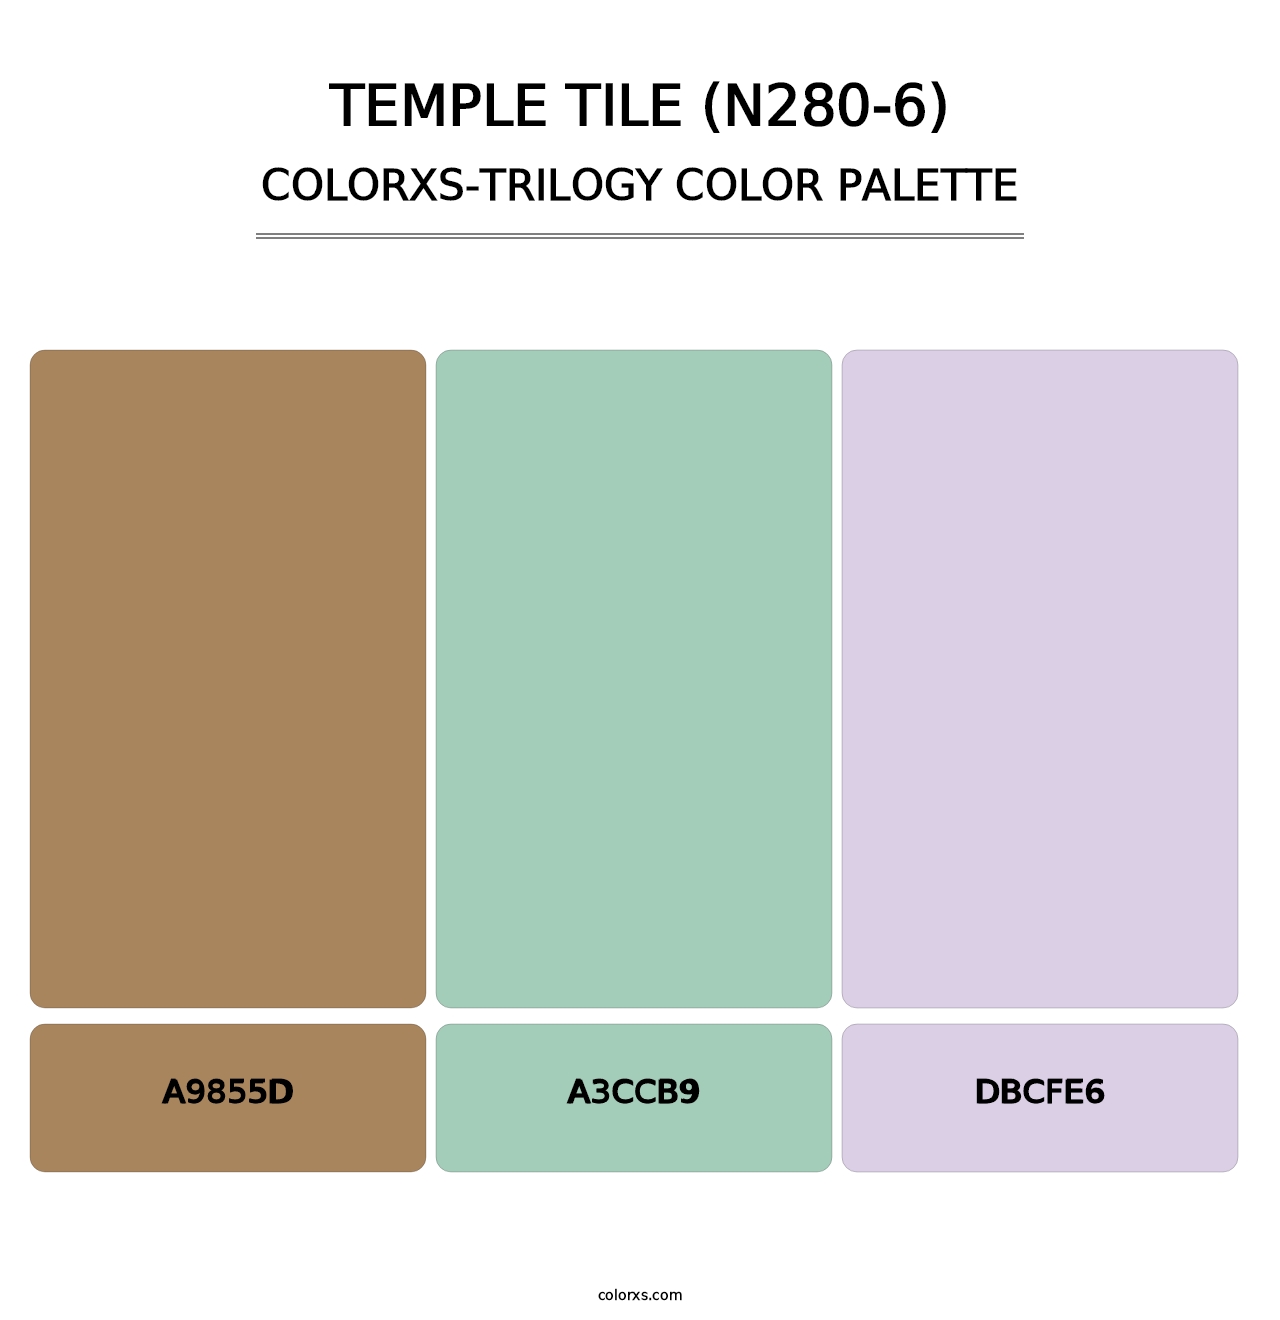 Temple Tile (N280-6) - Colorxs Trilogy Palette